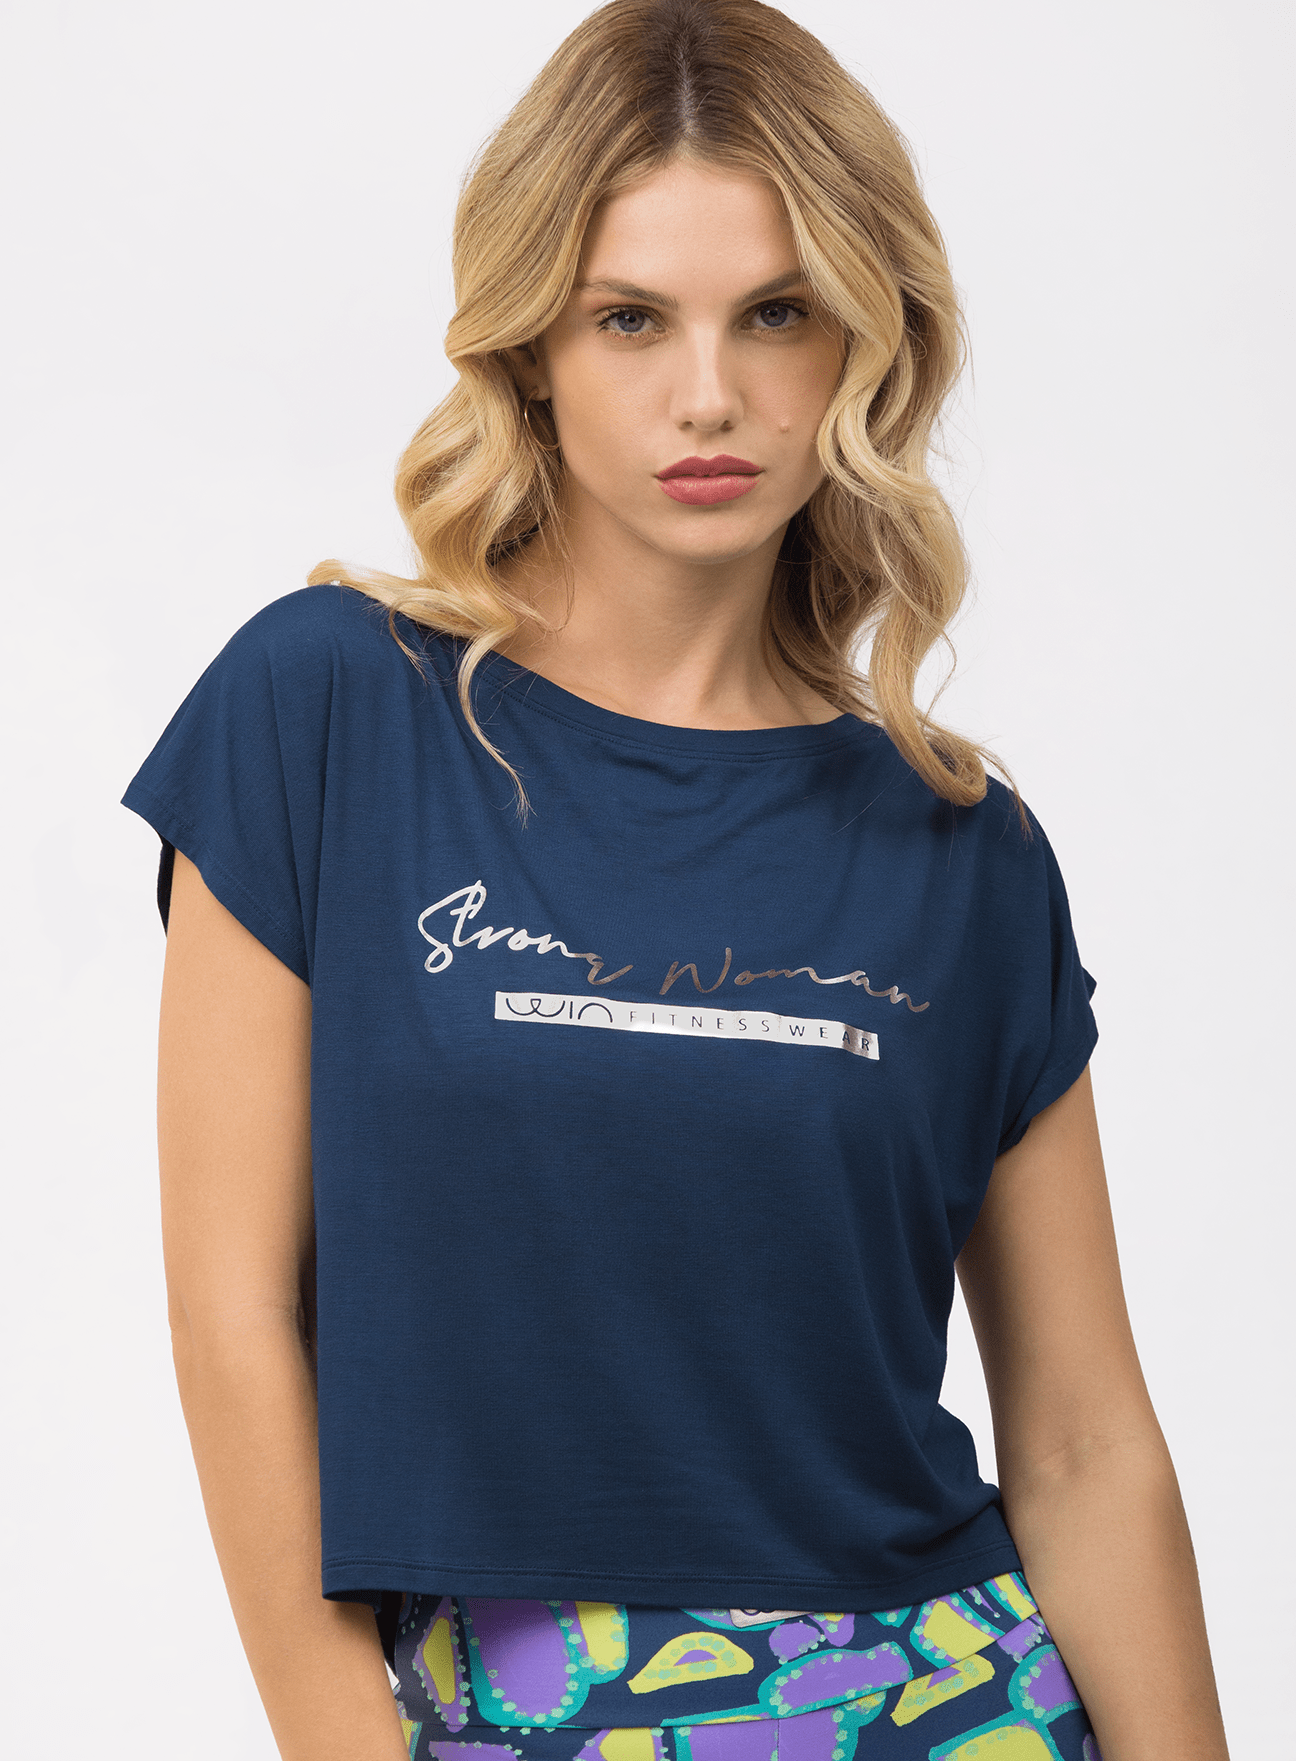 T-shirt Strong Woman - Navy Blue Tshirt WinFitnesswear 